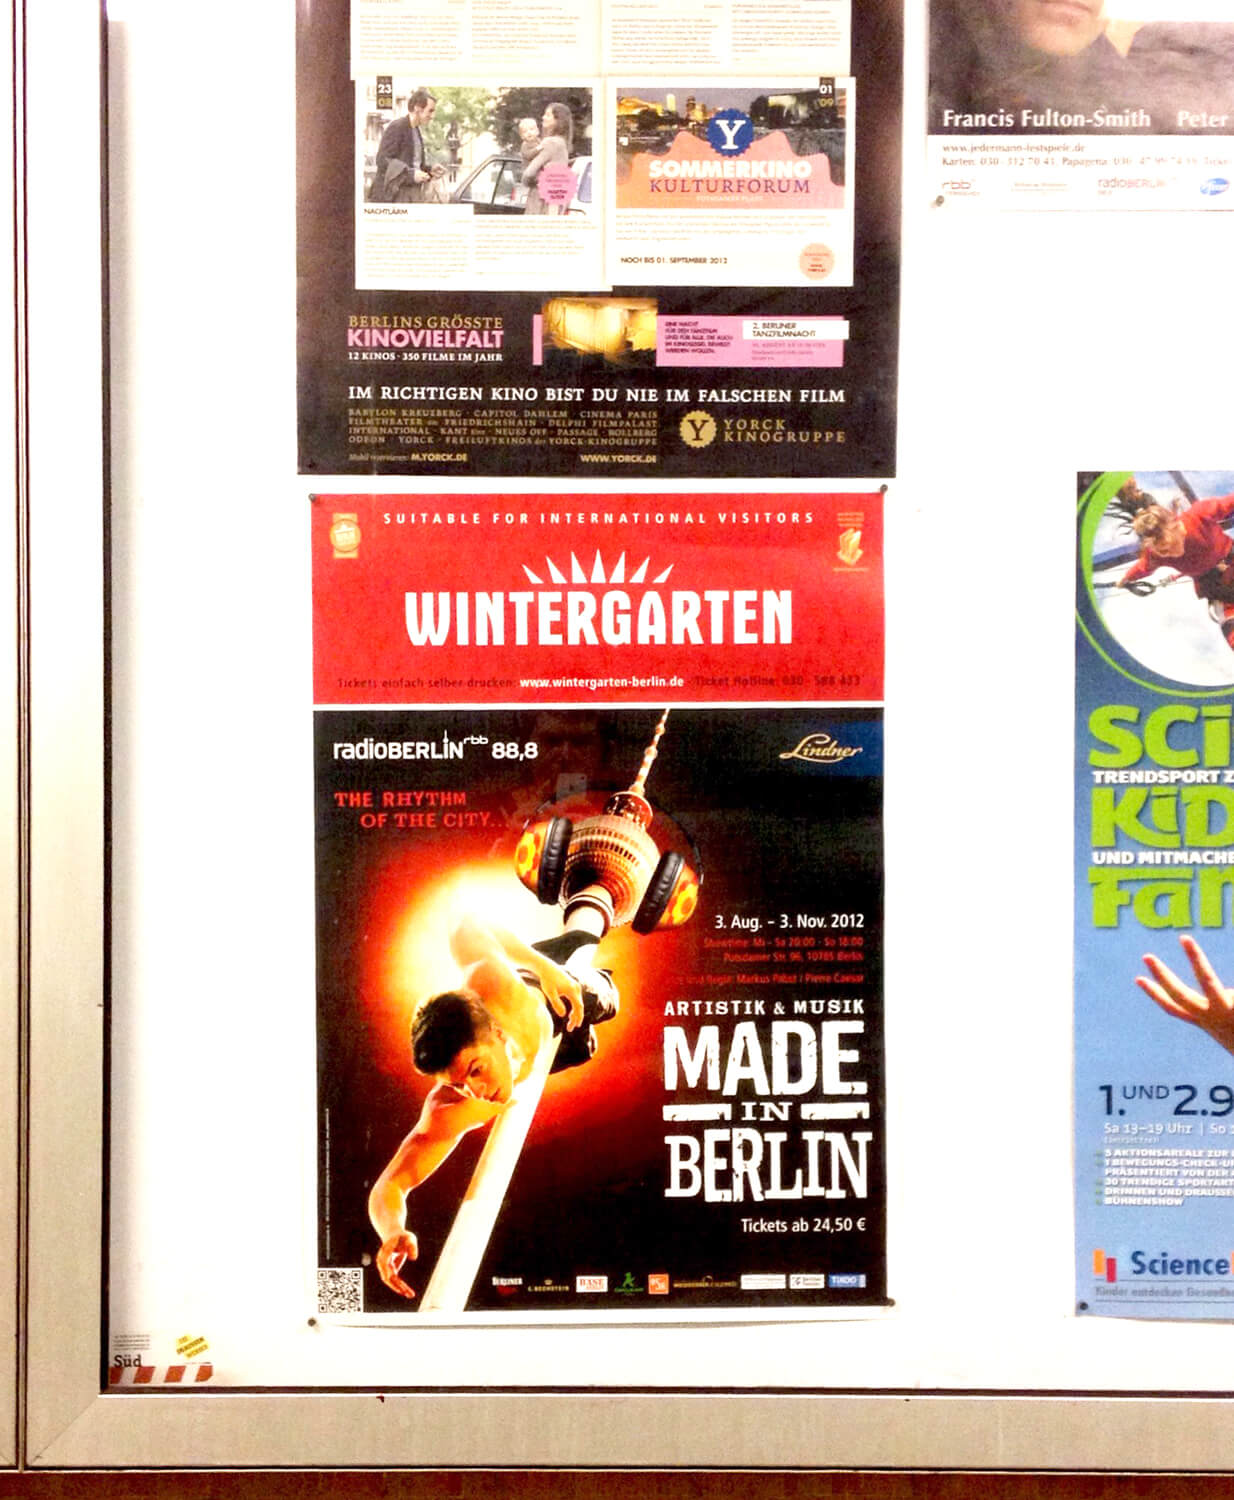 Plakat in einem U-Bahn-Schaukasten für die Veranstaltung "Made in Berlin" der Veranstaltungsfirma "Wintergarten" in Berlin